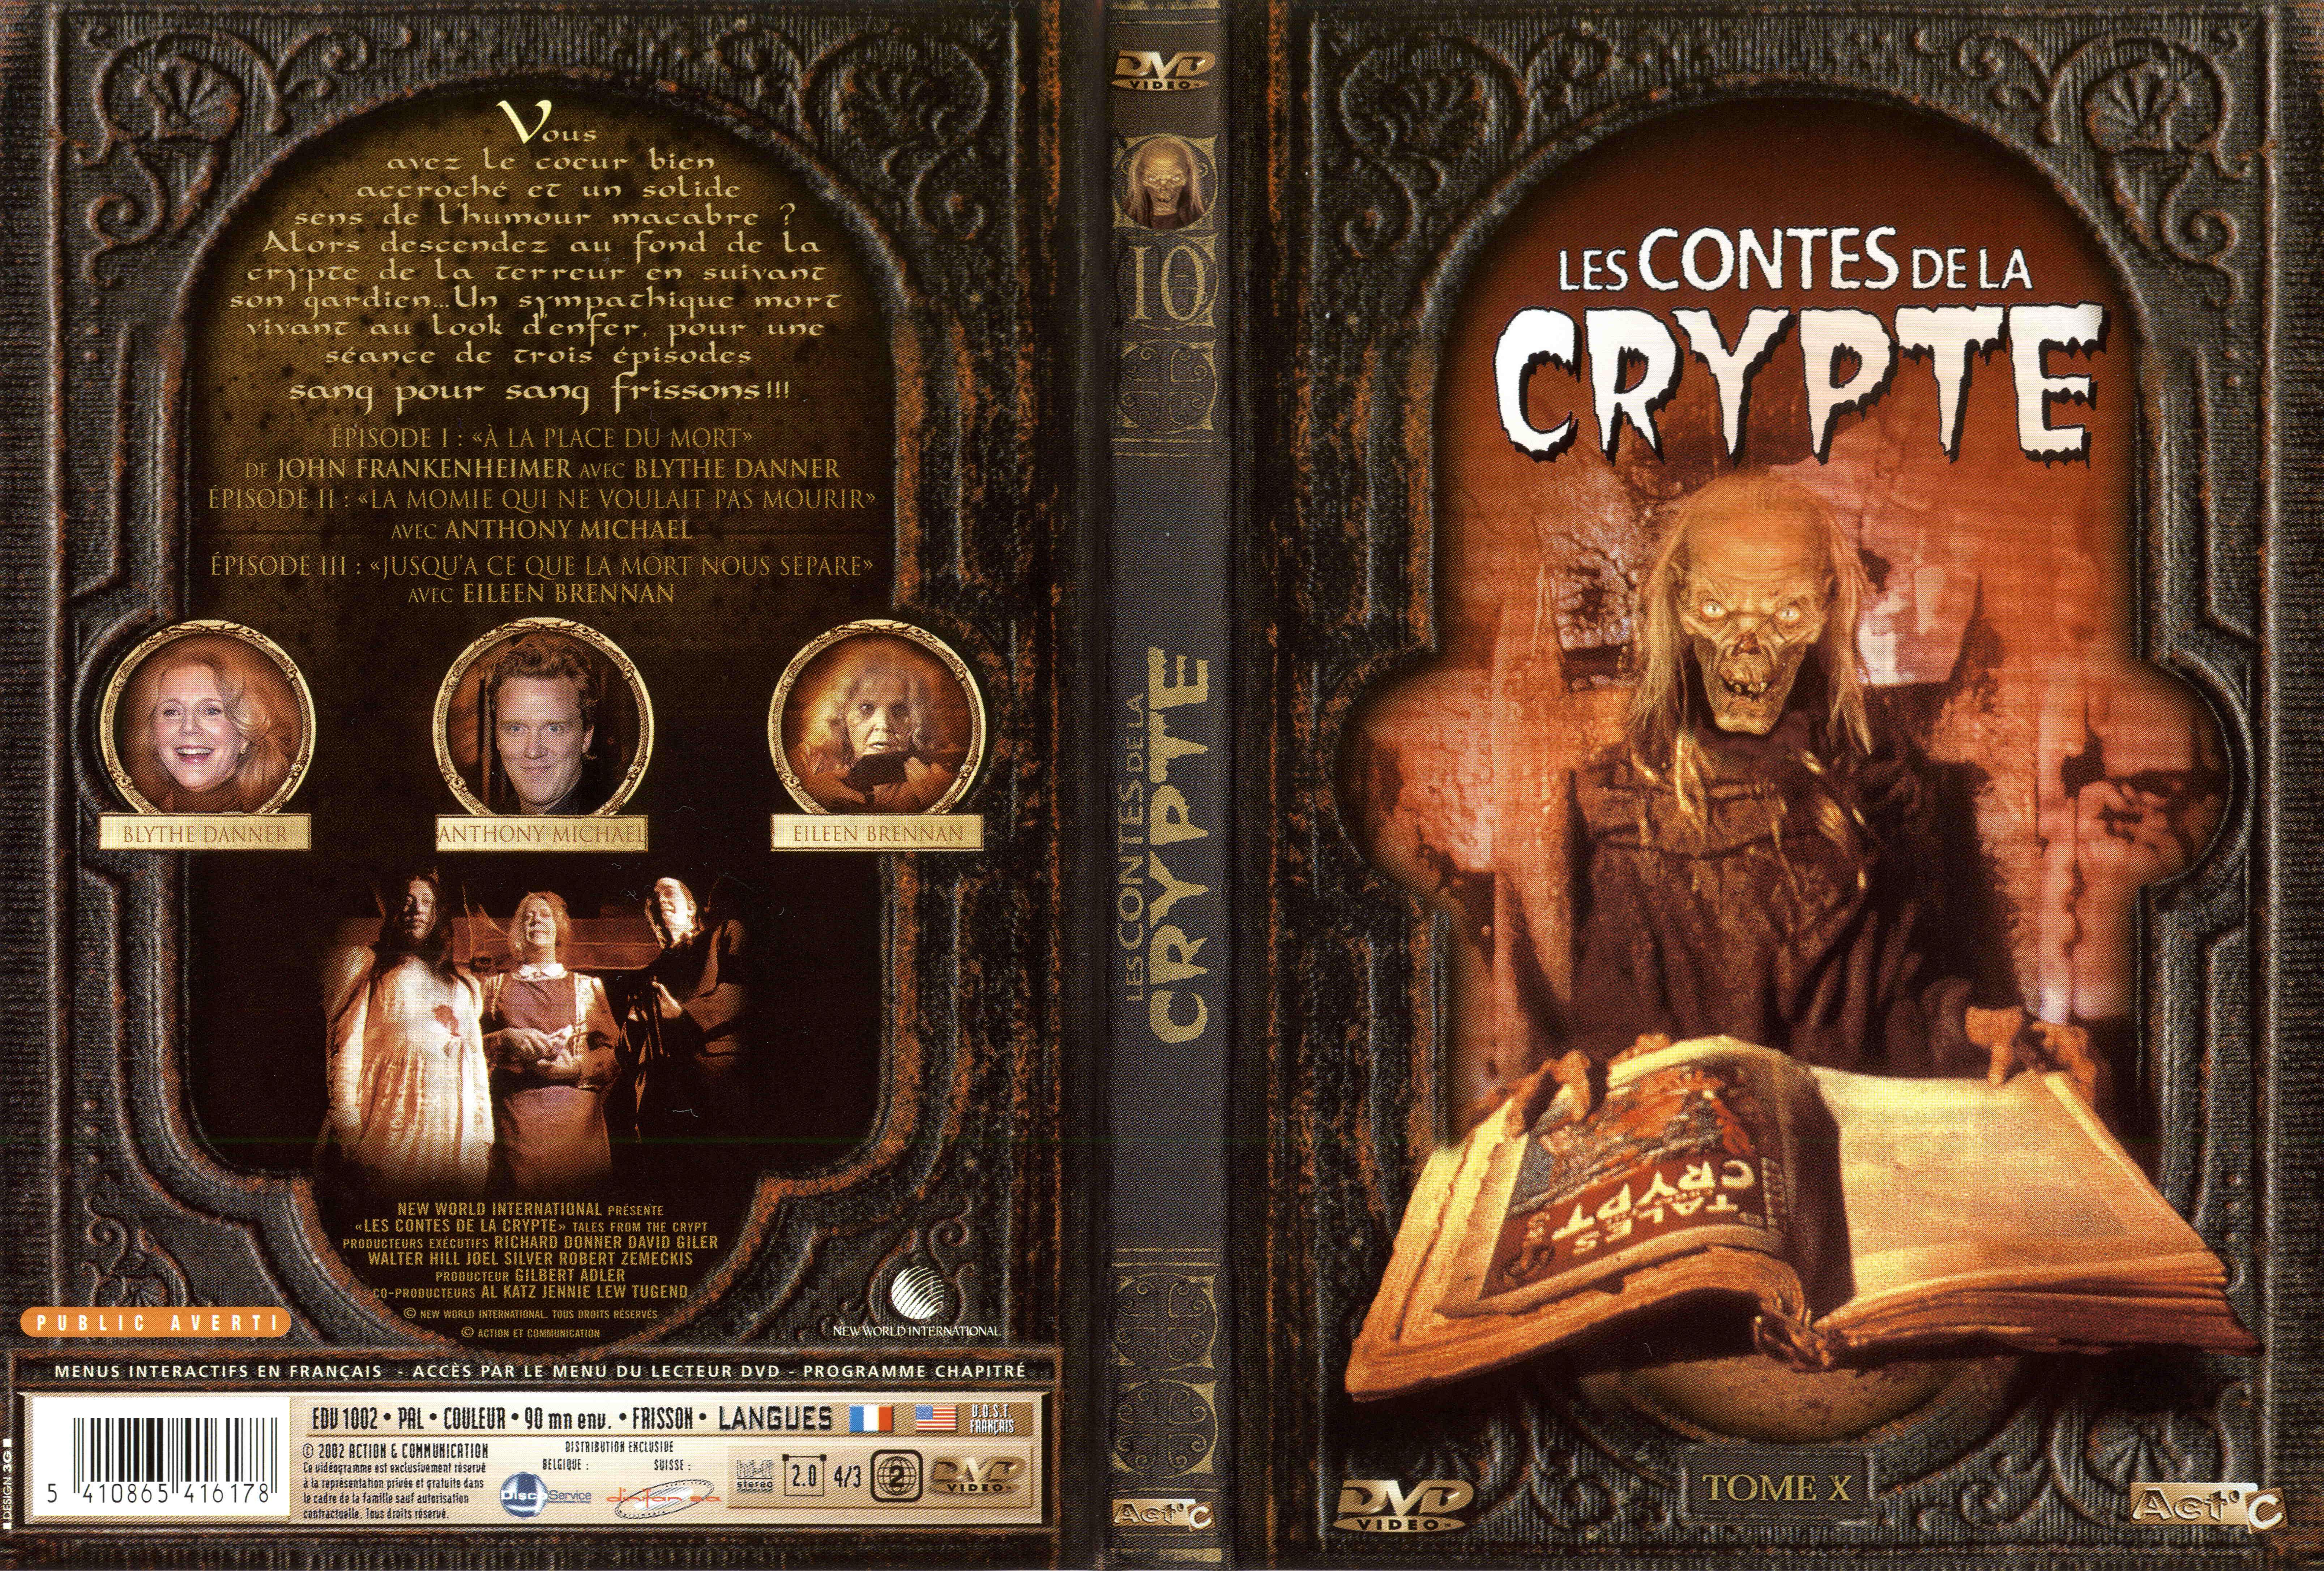 Jaquette DVD Les contes de la crypte vol 10 v2